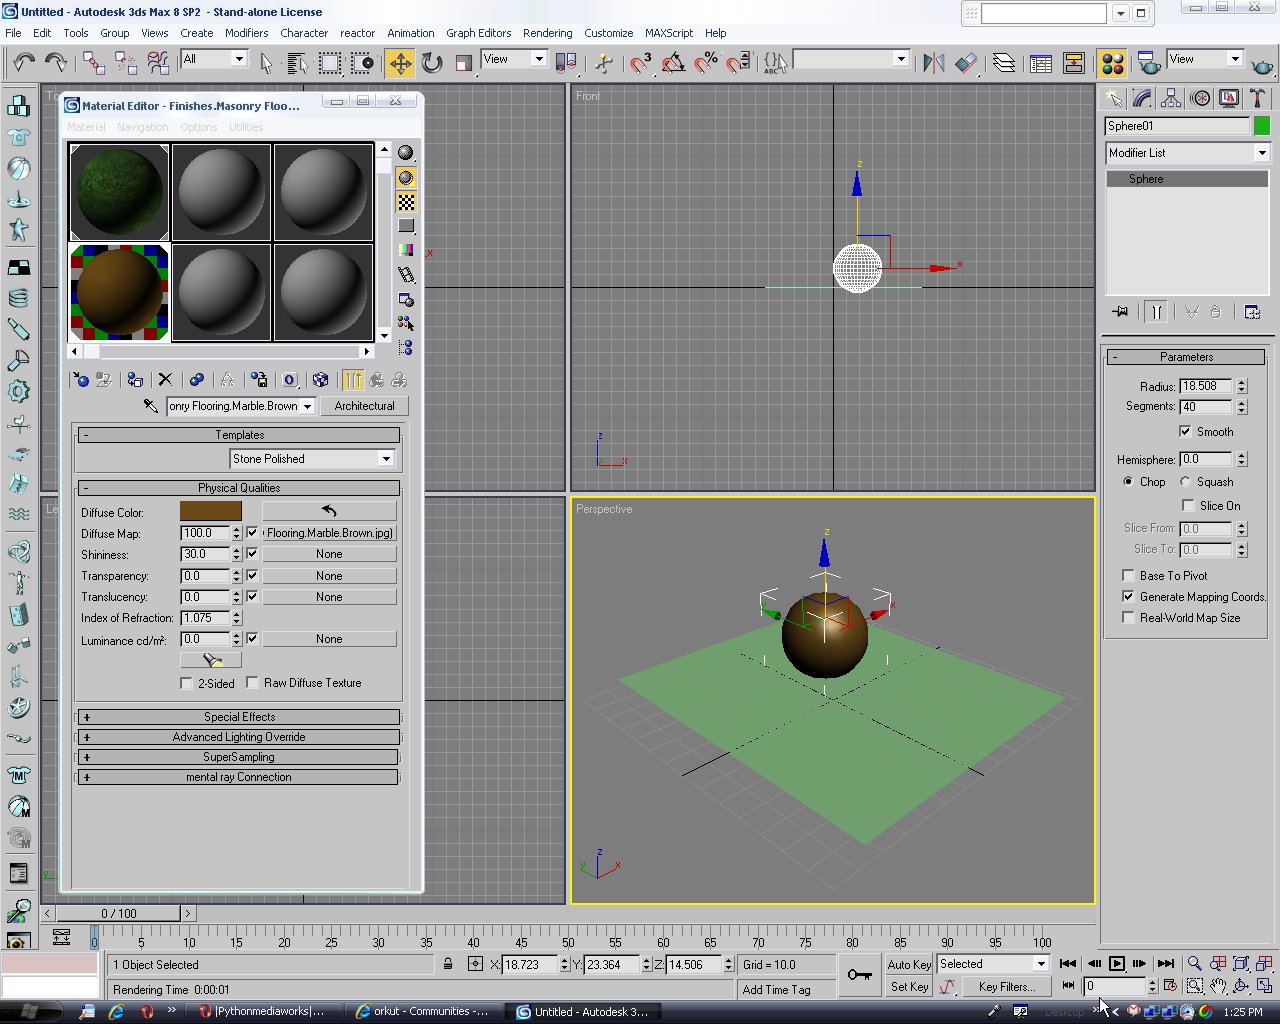 Kinetix 3d Studio Max 3.1